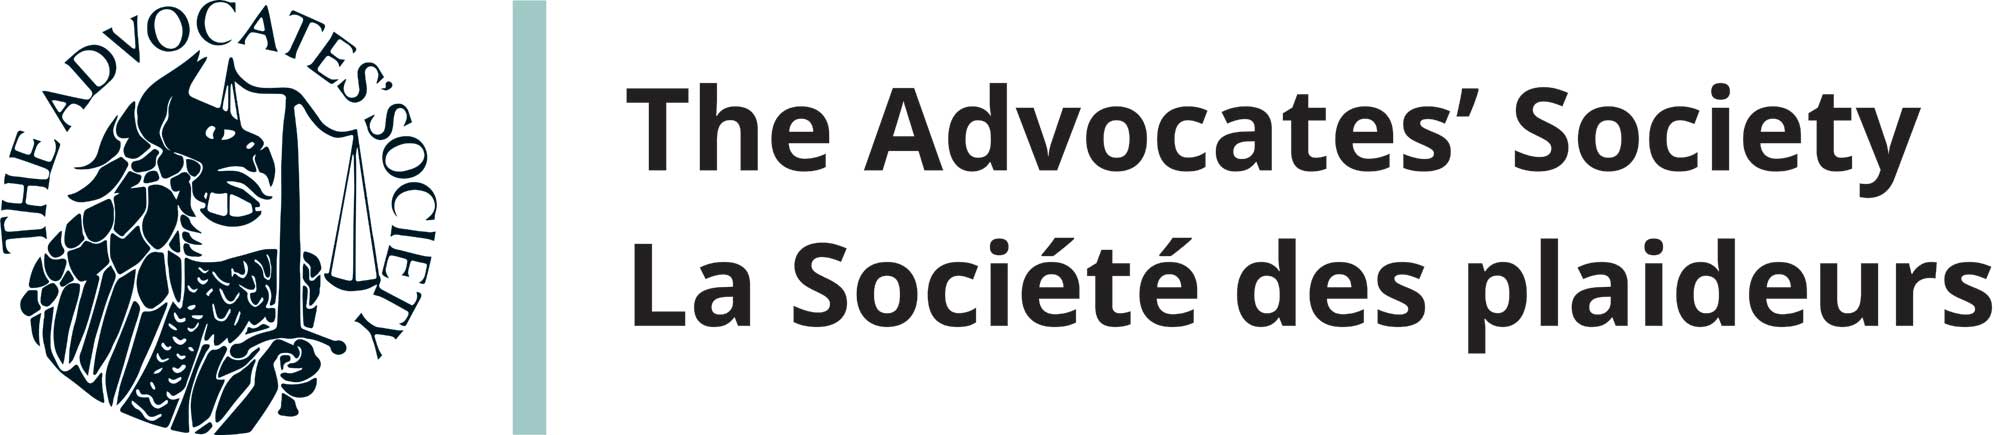 The Advocates' Society